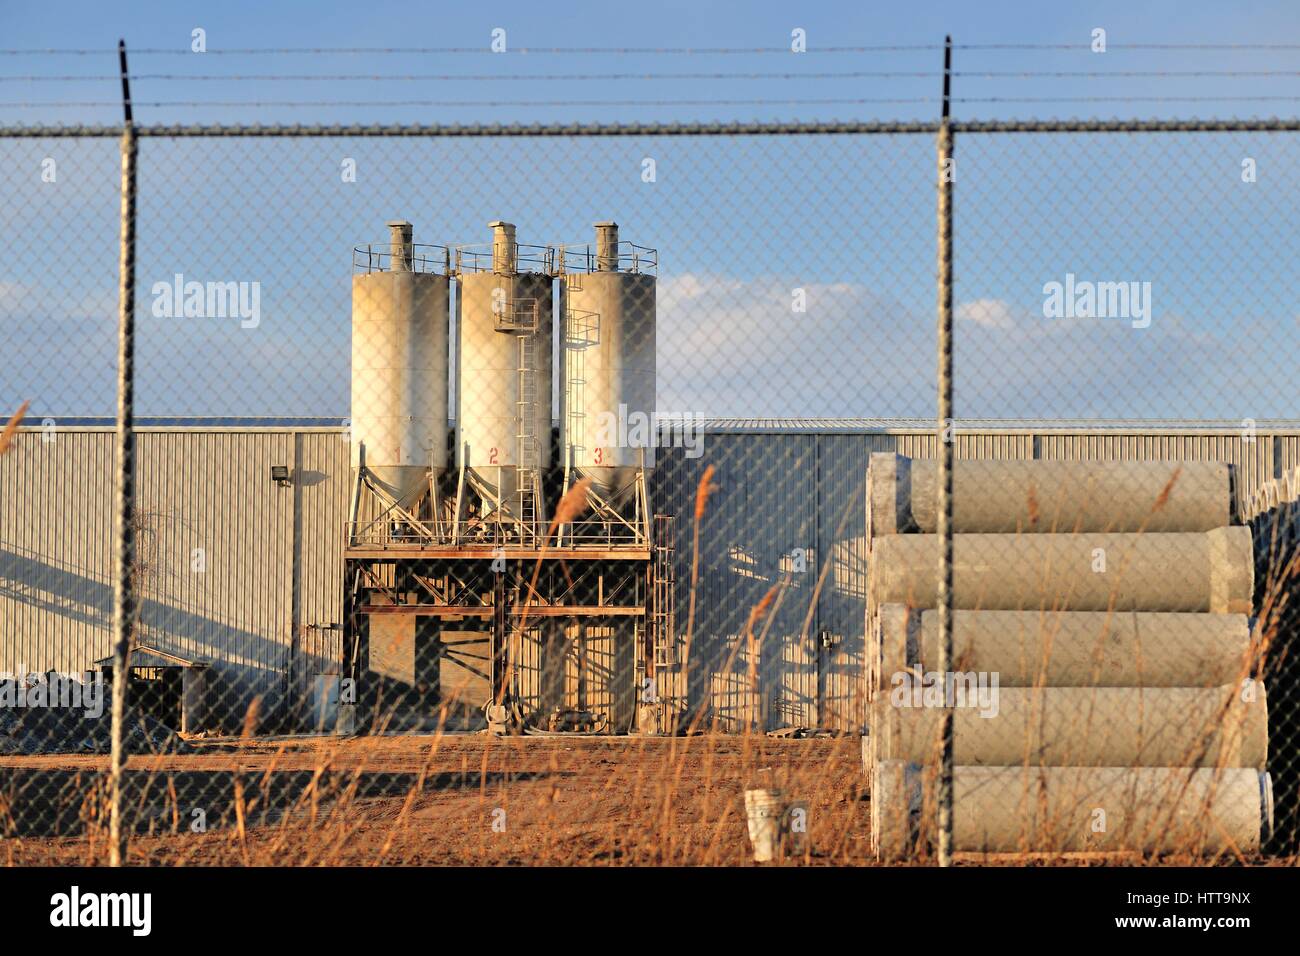 Un azienda di produzione fissato dietro una catena collegamento recinto, sormontato da barb filo in questa impostazione industriale in Bartlett, Illinois.USA. Foto Stock